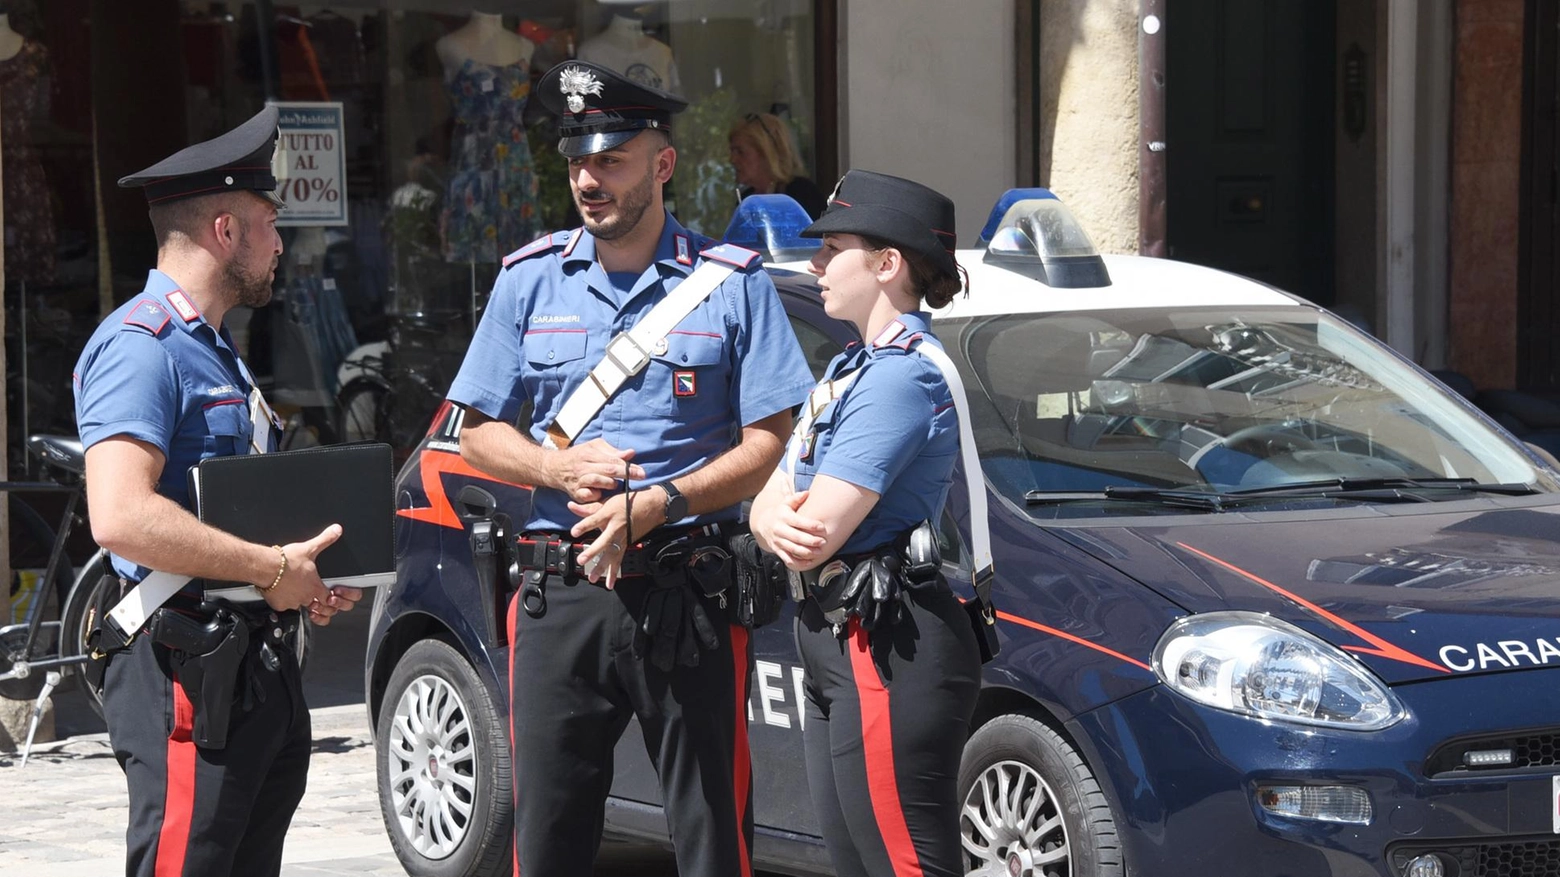 Doppio arresto dei carabinieri. Due giovani fermati per spaccio. Un 19enne finisce a Sollicciano